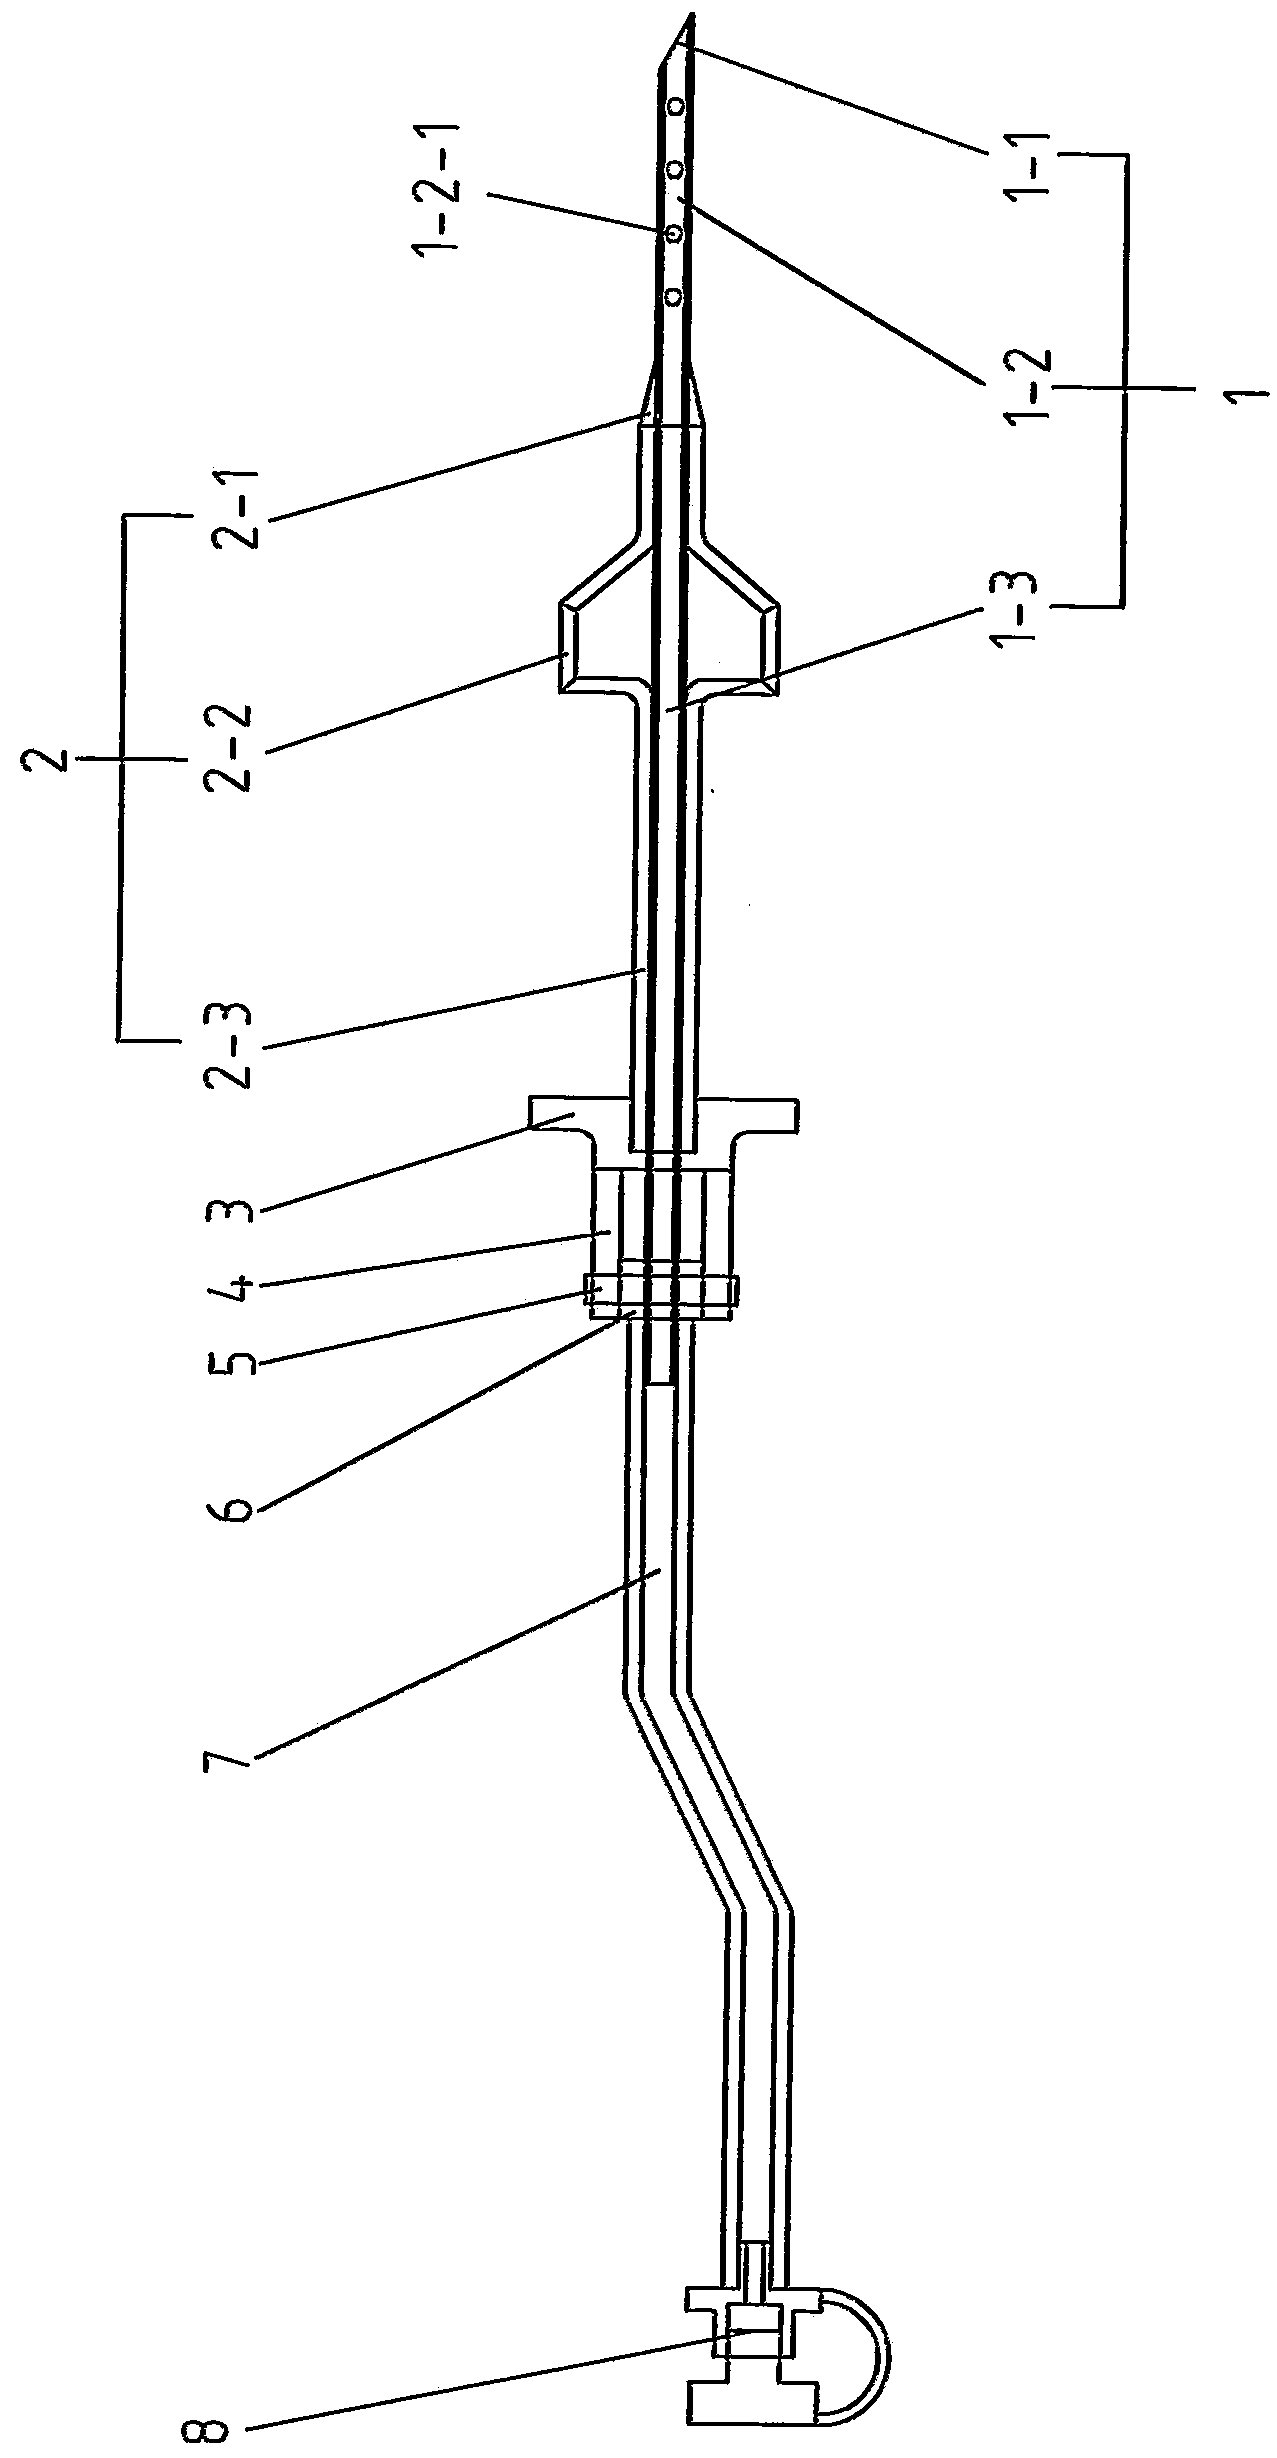 Medical puncture drainage apparatus